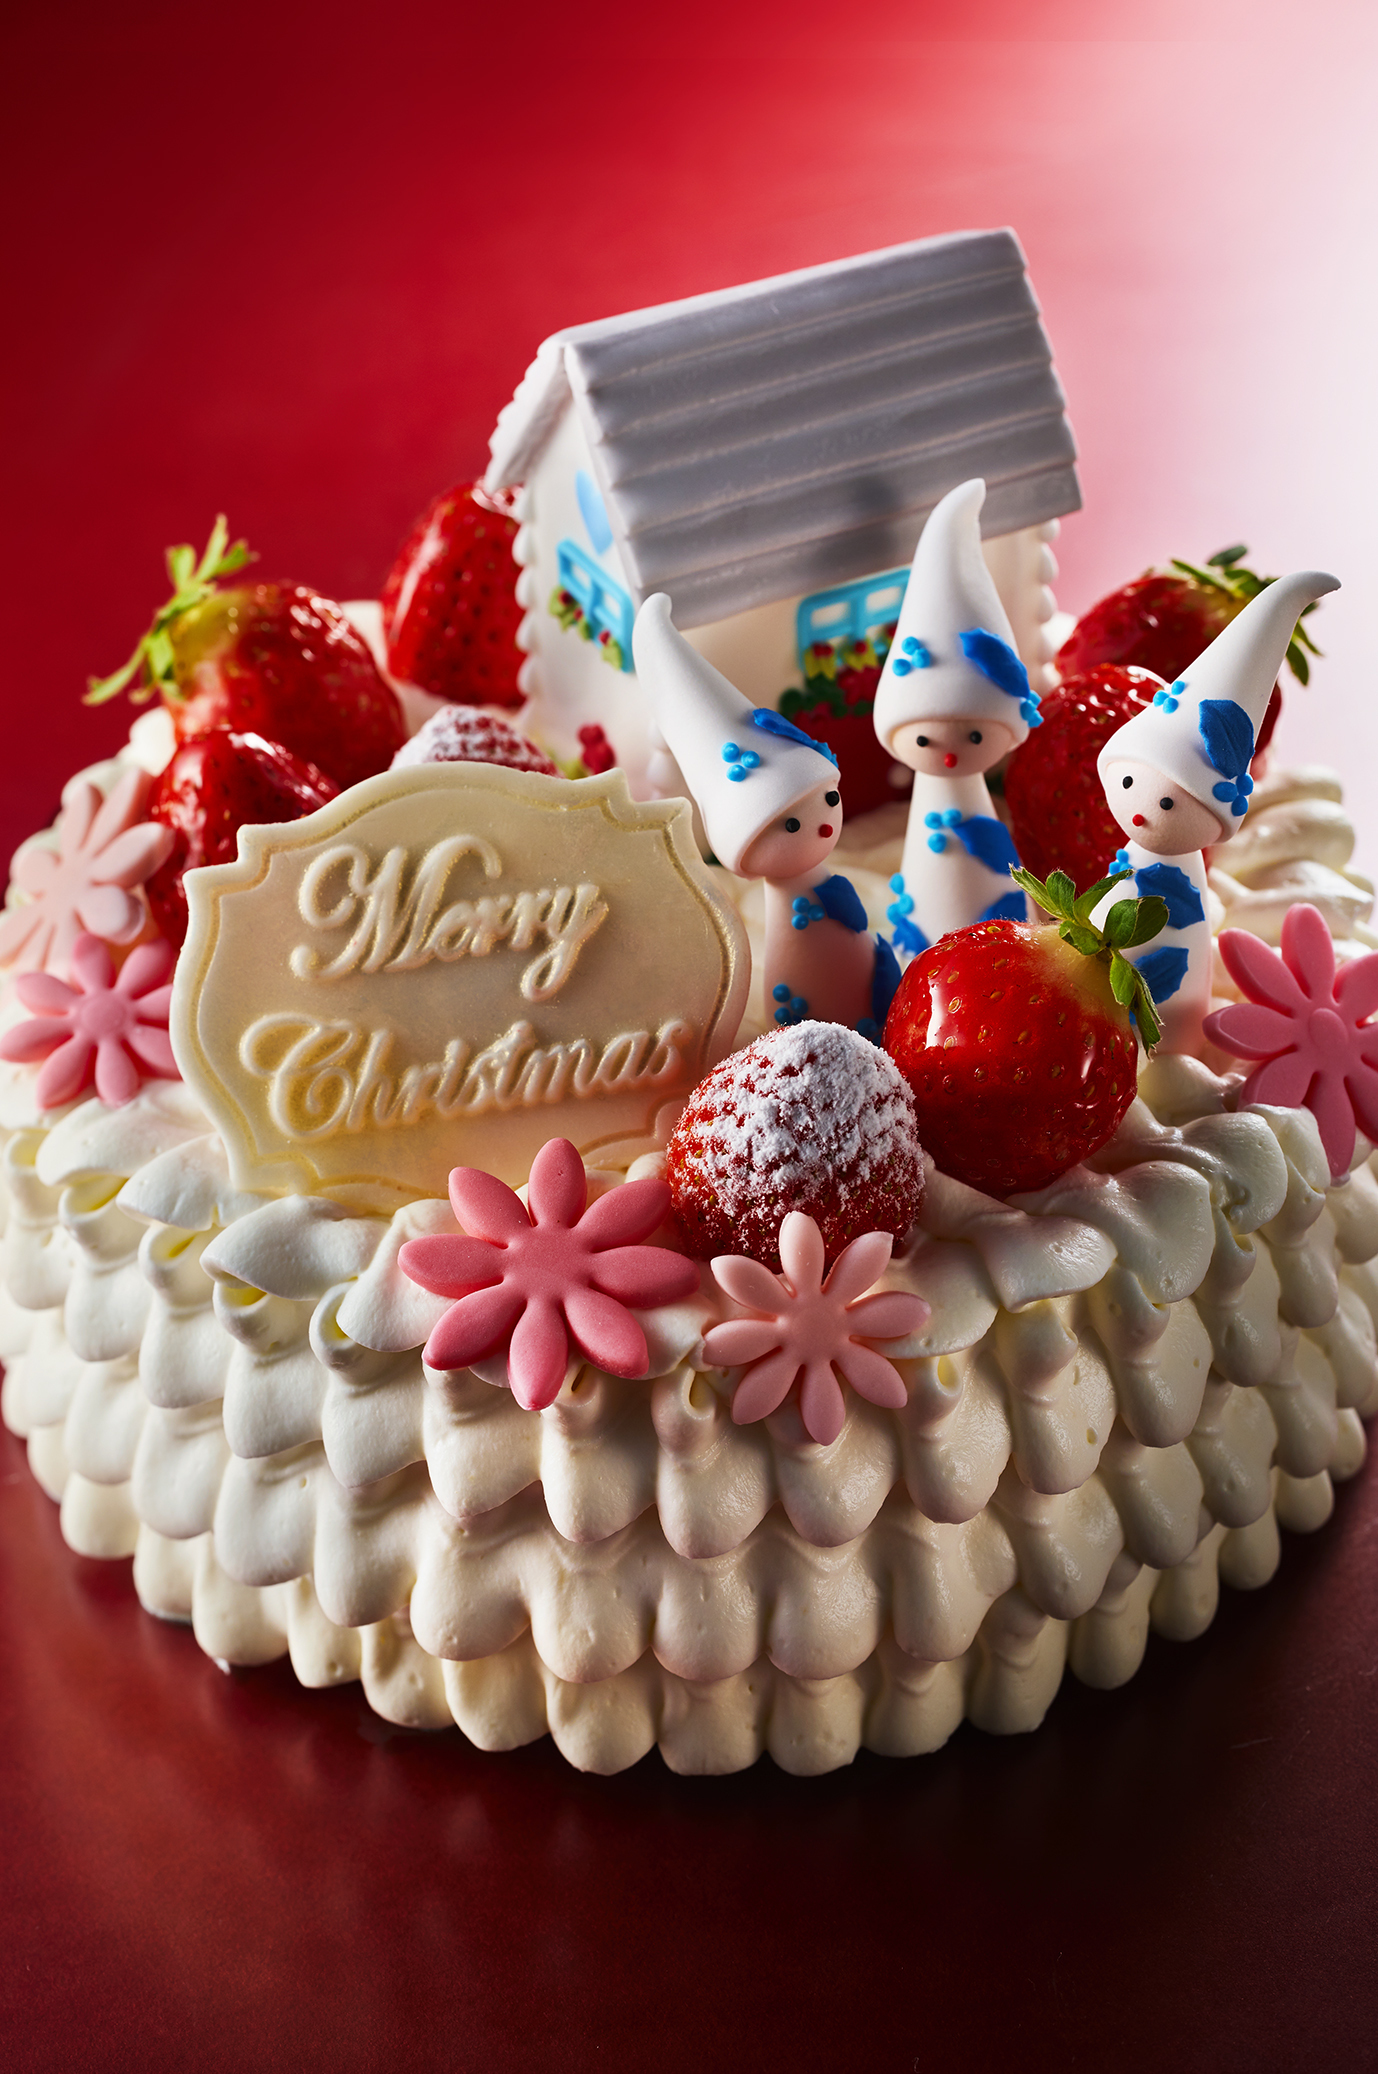 サンタと幻想的な雪景色を表現した2段ショートケーキ登場 細かな技巧が光るクリスマスケーキが数量限定で11 14 木 より予約開始 株式会社アニバーサリー のプレスリリース